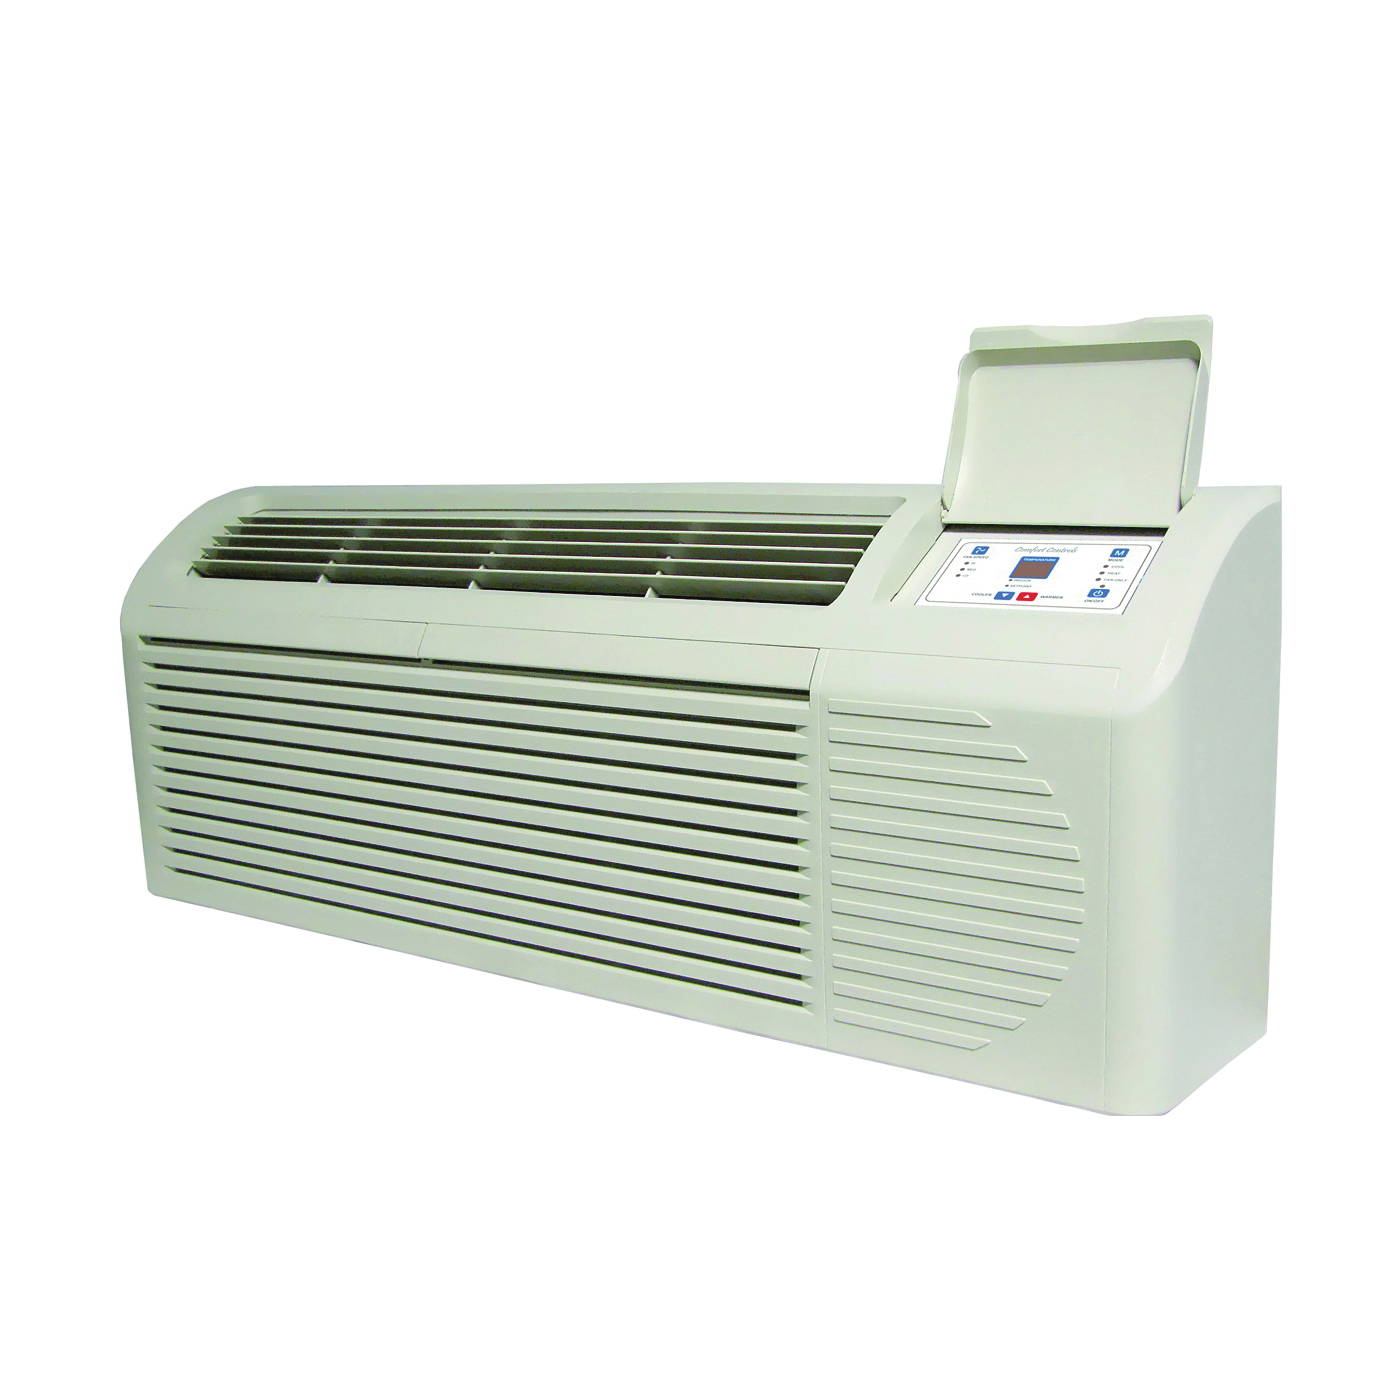 PTAC EKTC09-1G-3-KIT Air Conditioner Kit, 208/230 V, 9000 Btu Cooling, Electronic Control